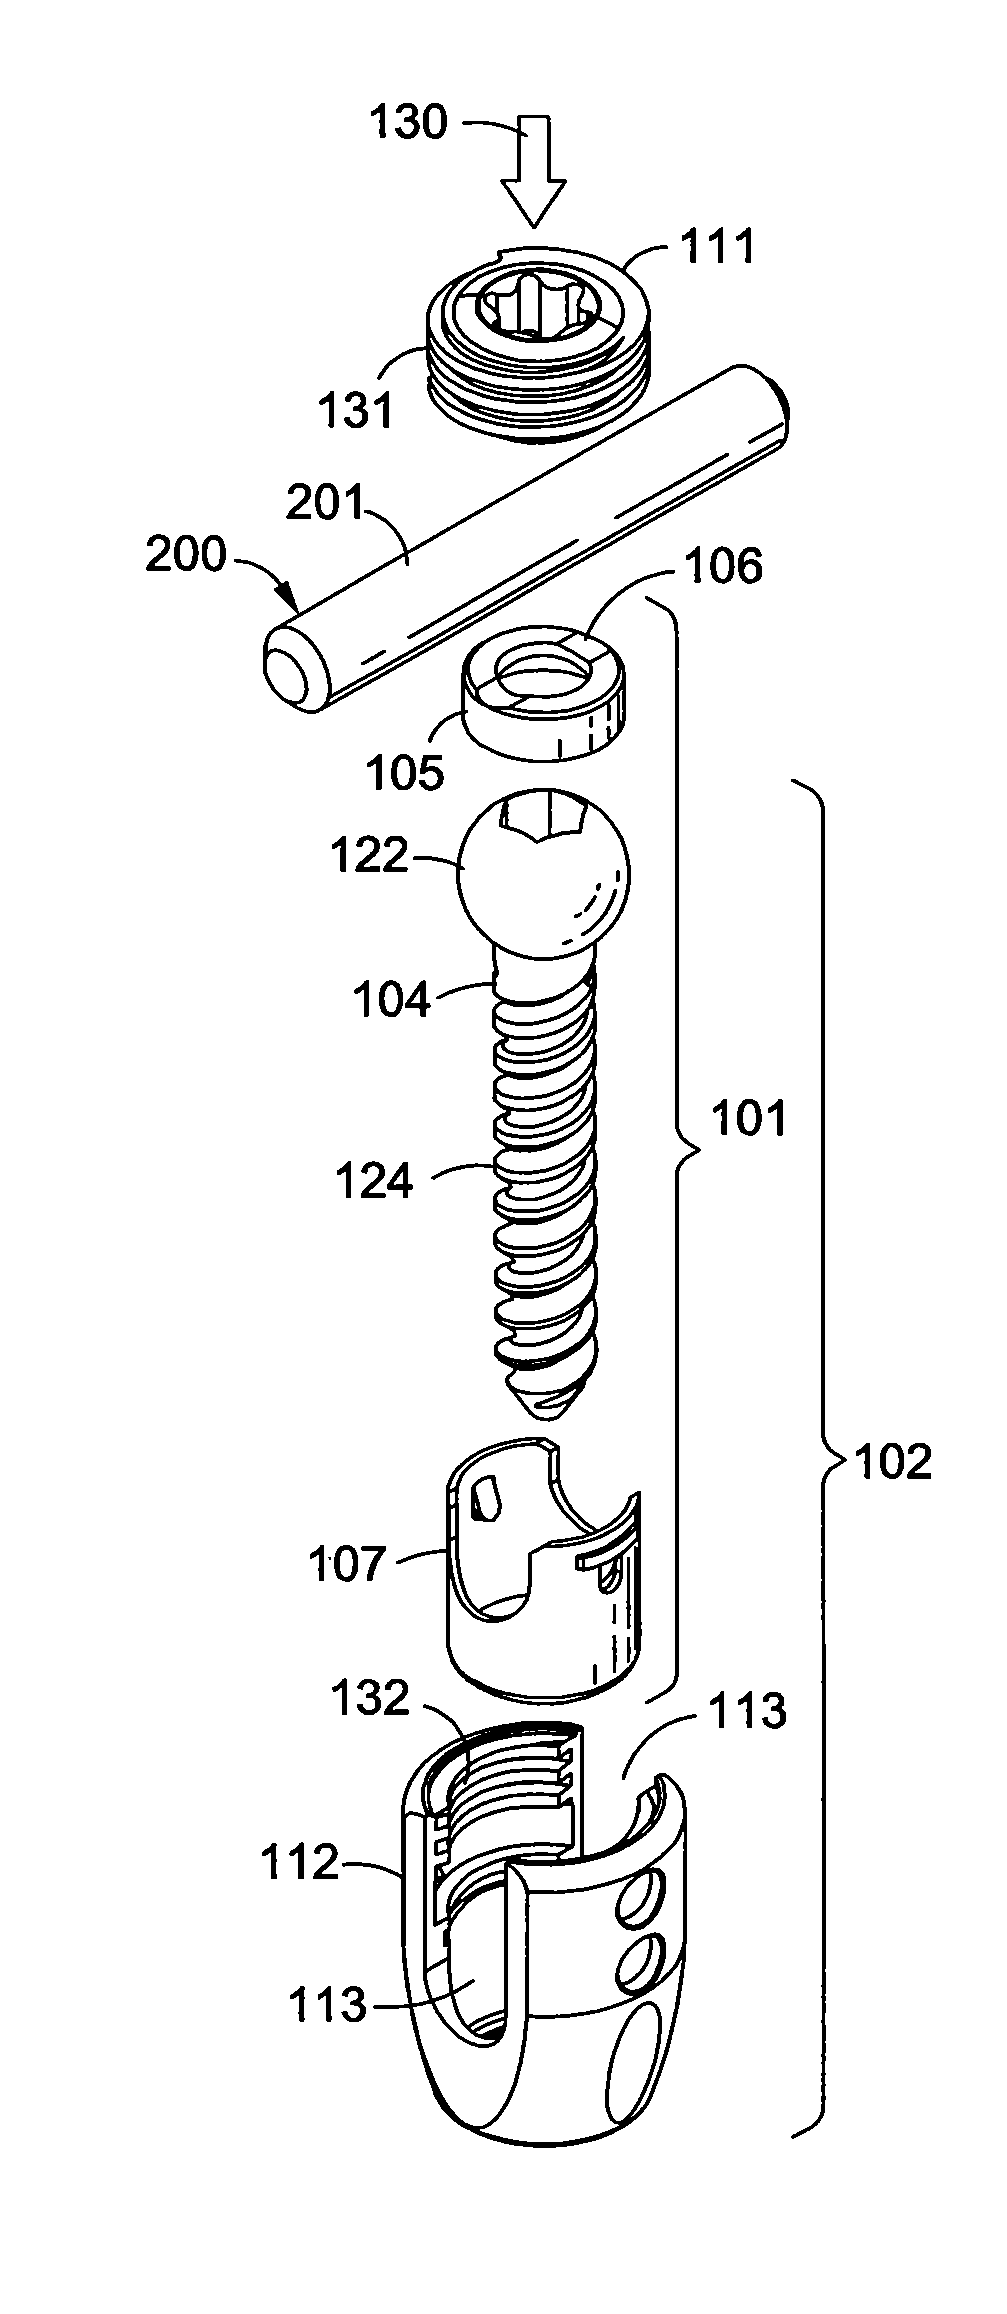 Pedicle screws and dynamic adaptors